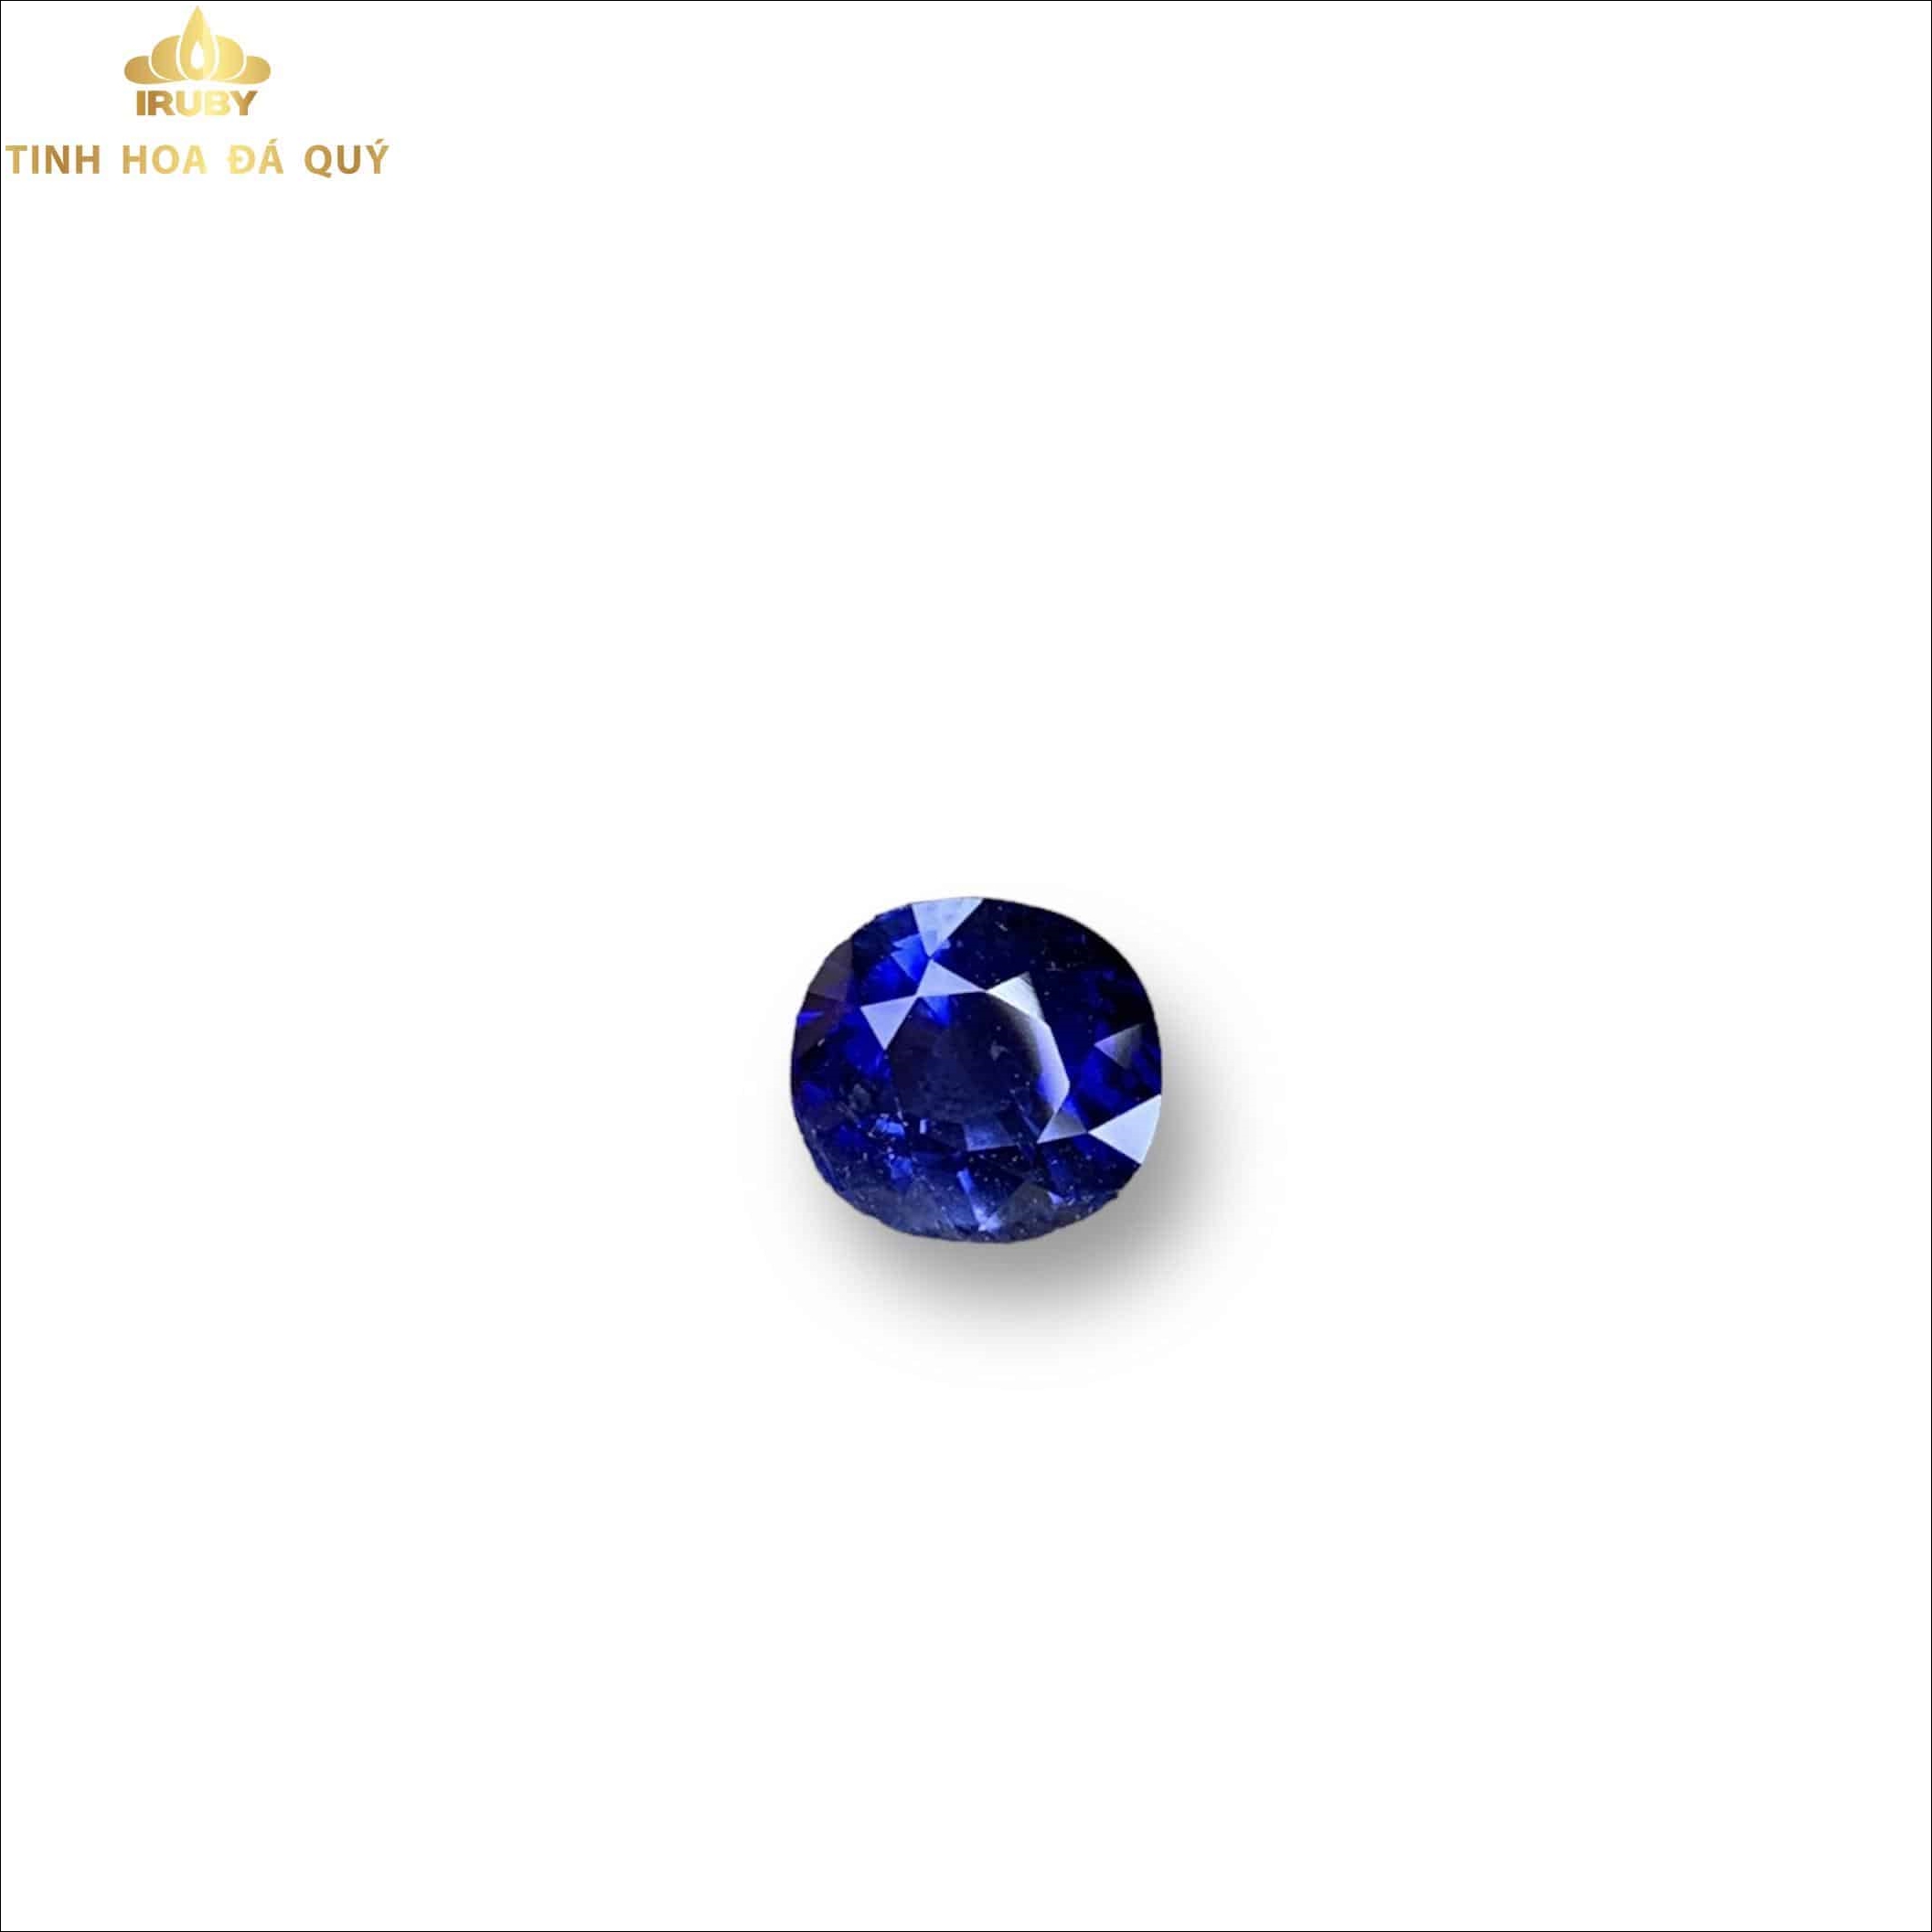 Viên Sapphire xanh lam hoàng gia 2,61ct - IRBS 233261